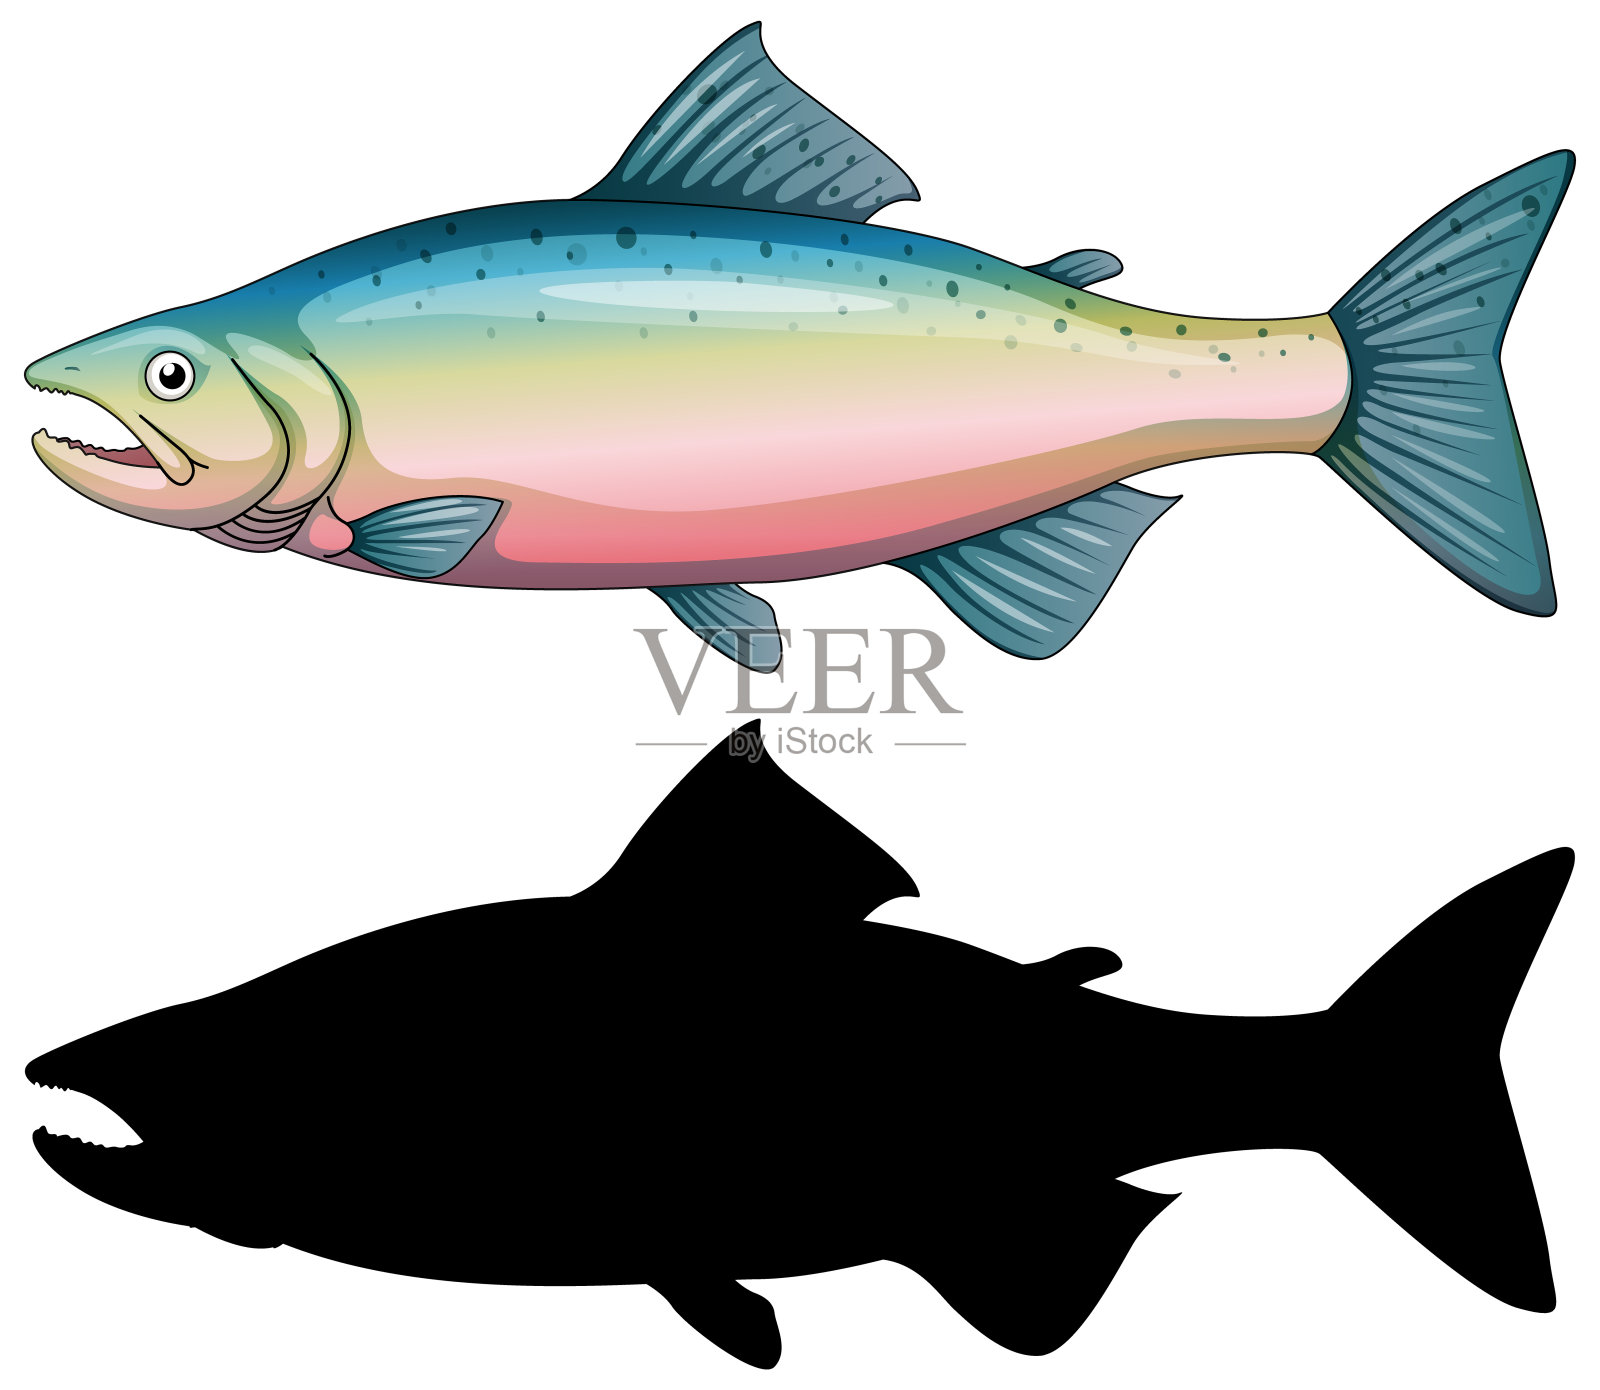 一组鱼的人物和它的轮廓在白色的背景上插画图片素材